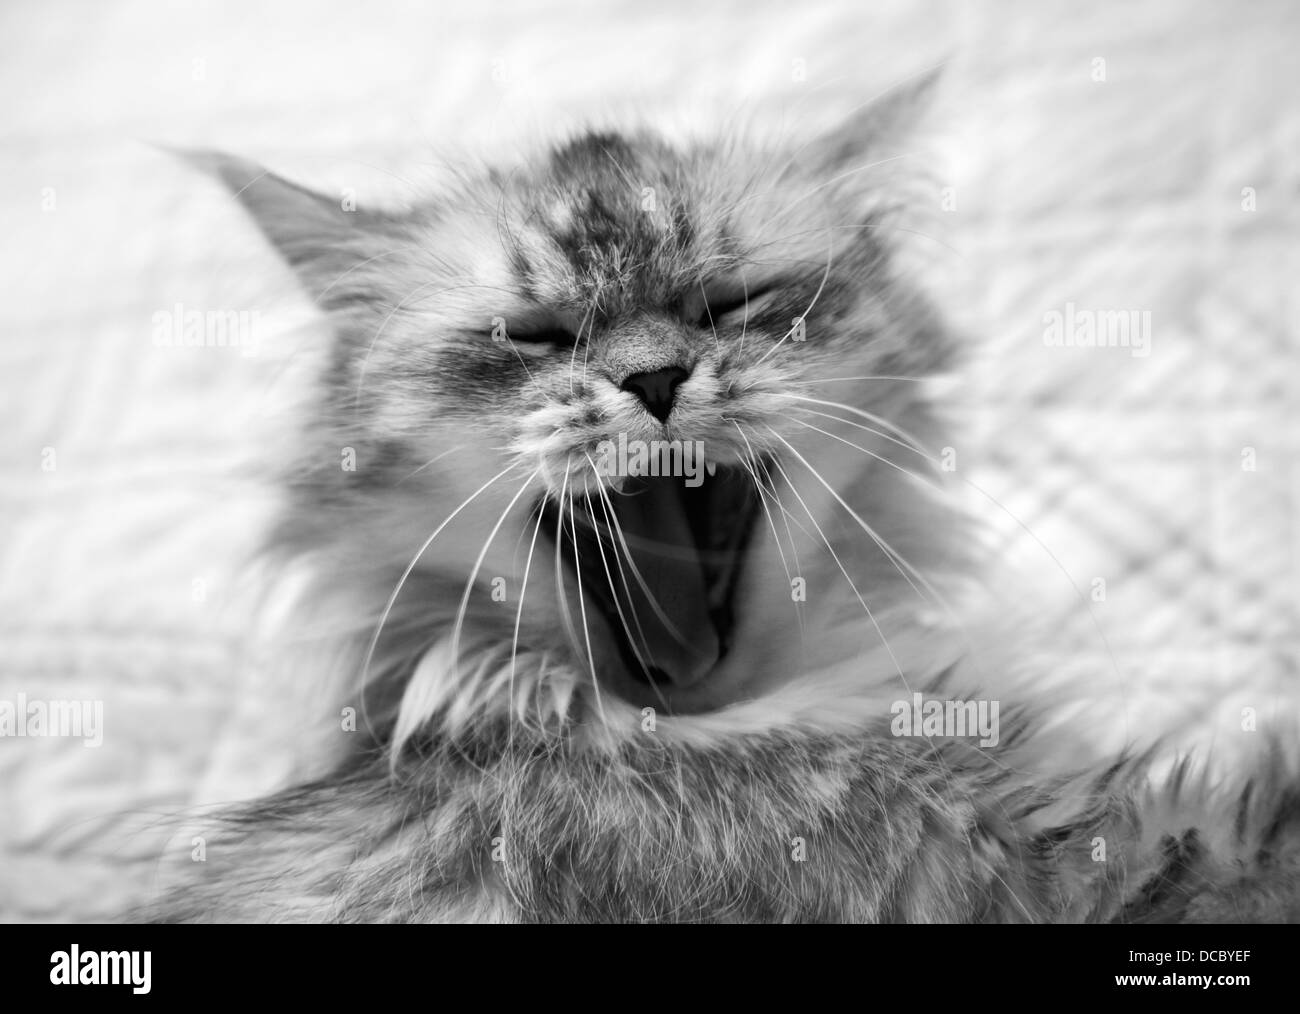 Yawning cat Stock Photo